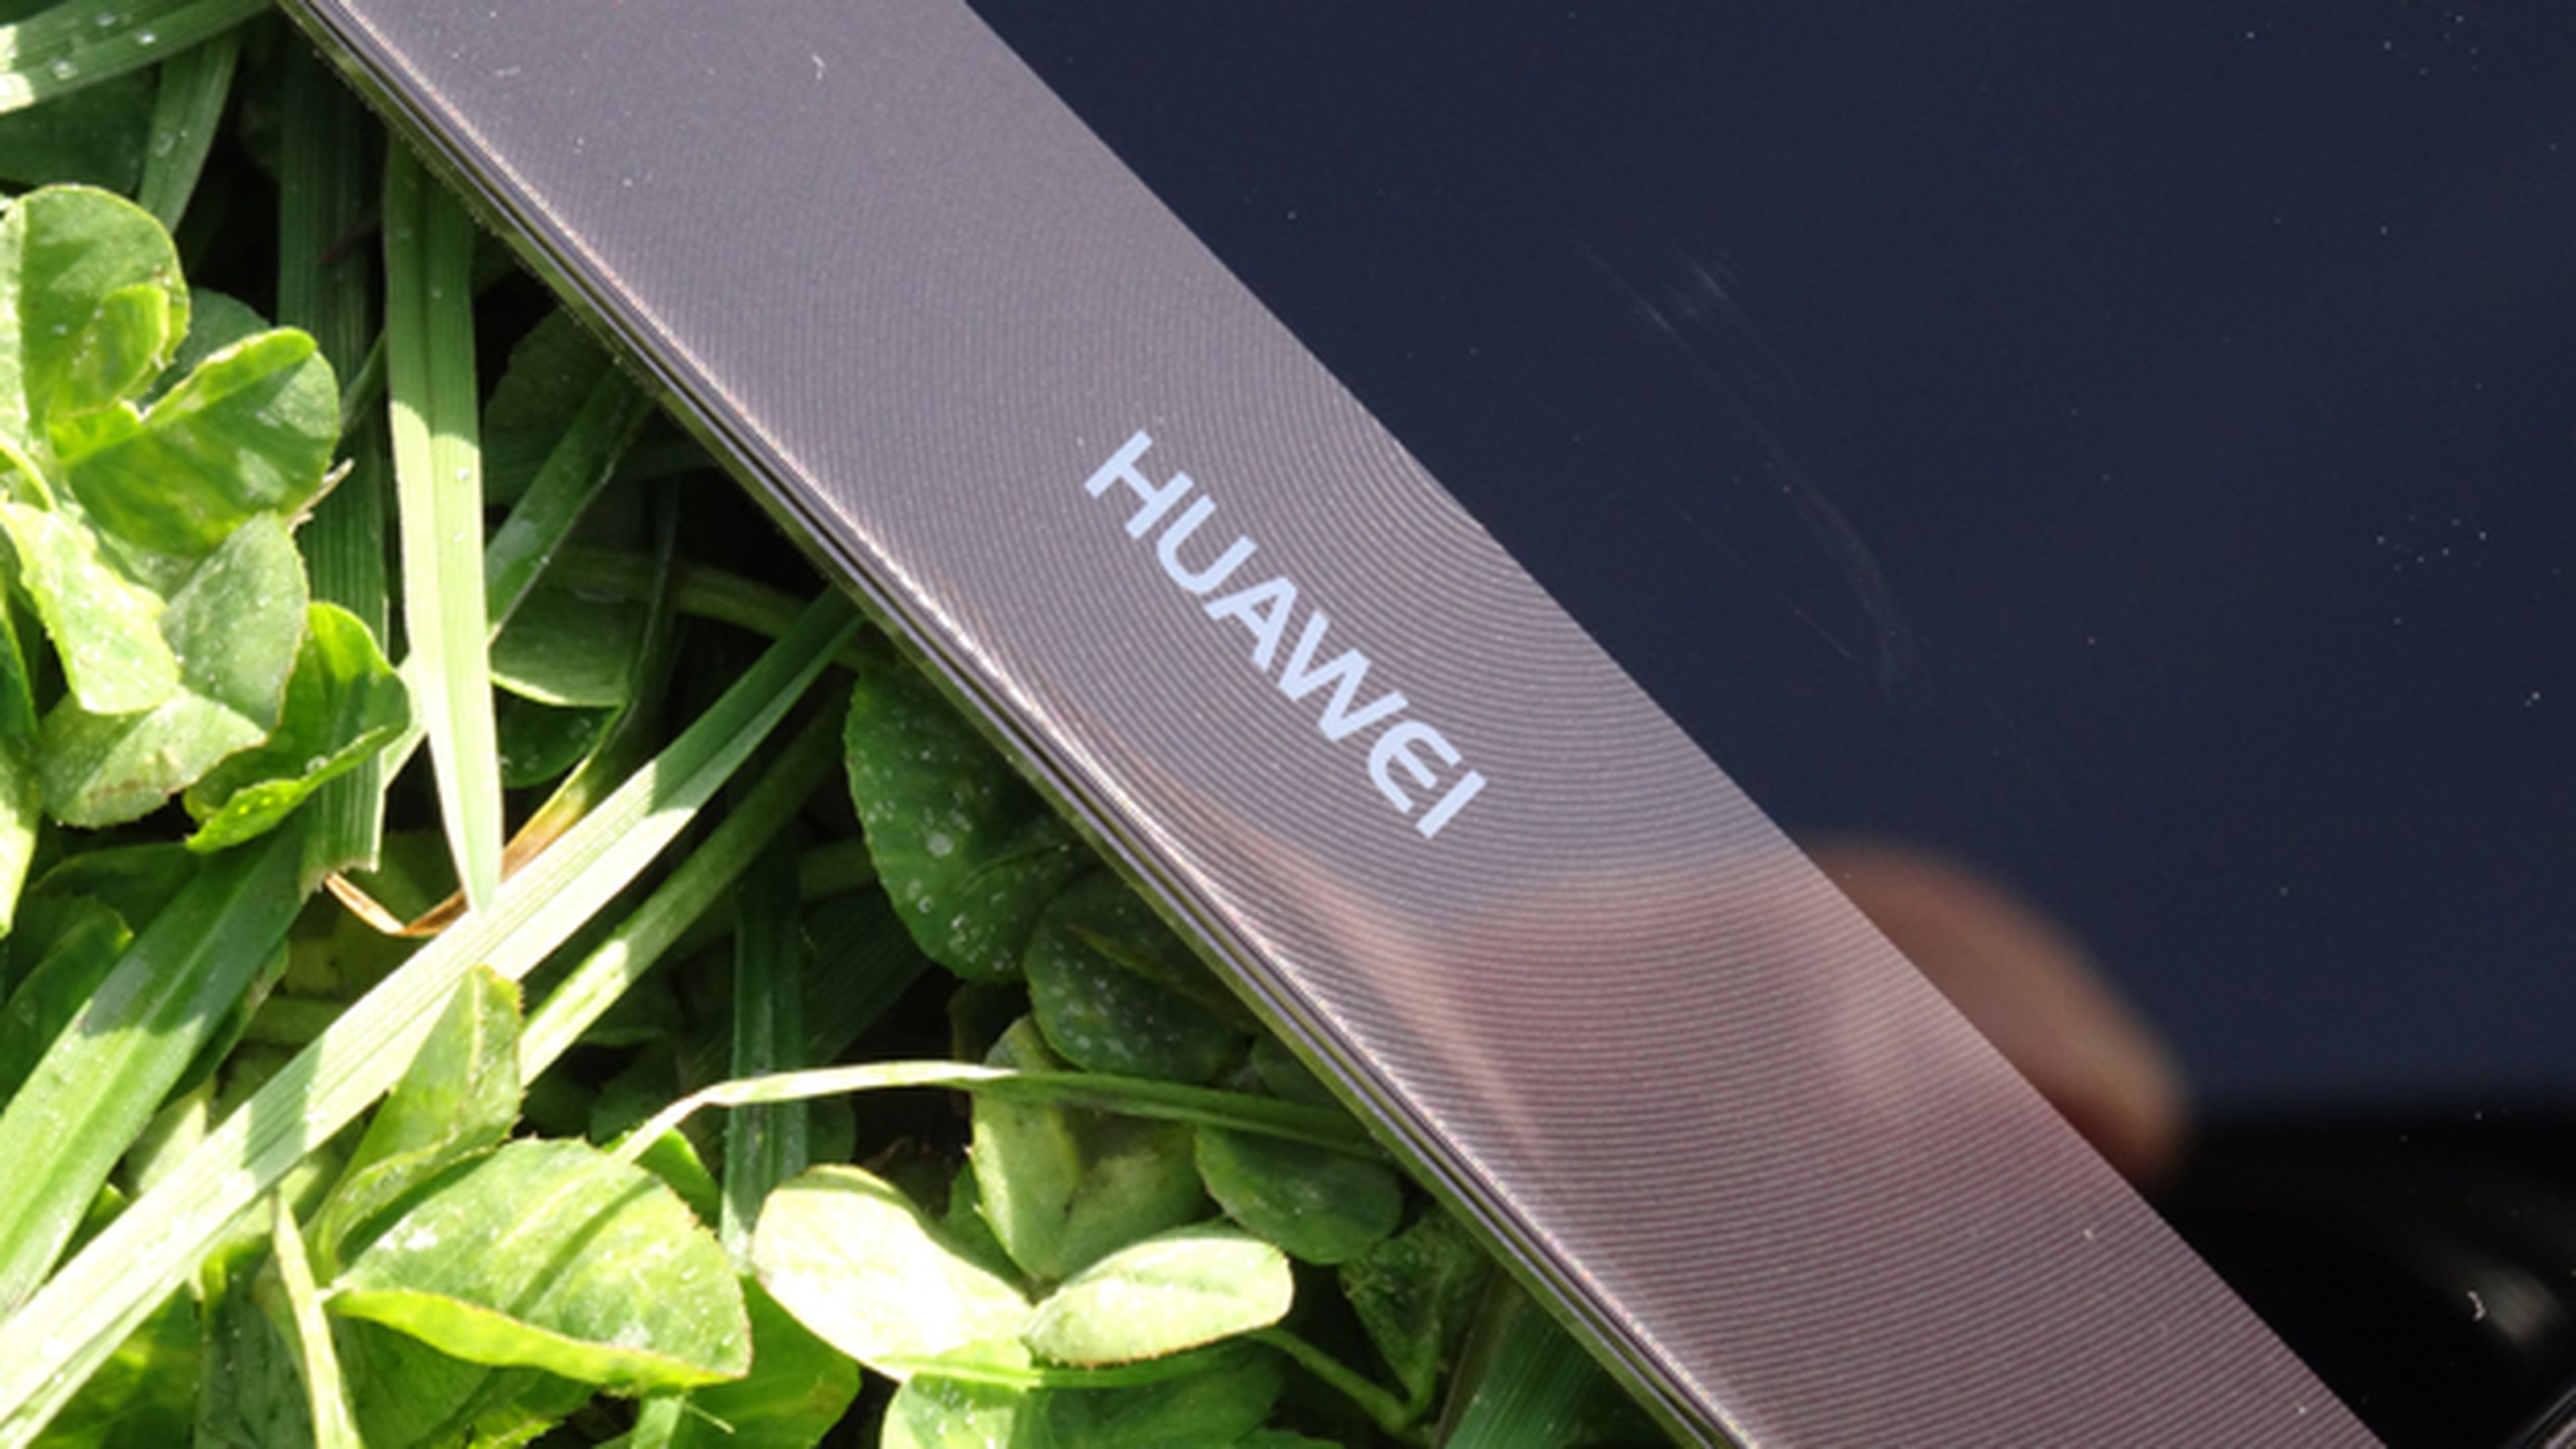 Seguimos con nuestra review del Huawei Mate 9 hablando del rendimiento